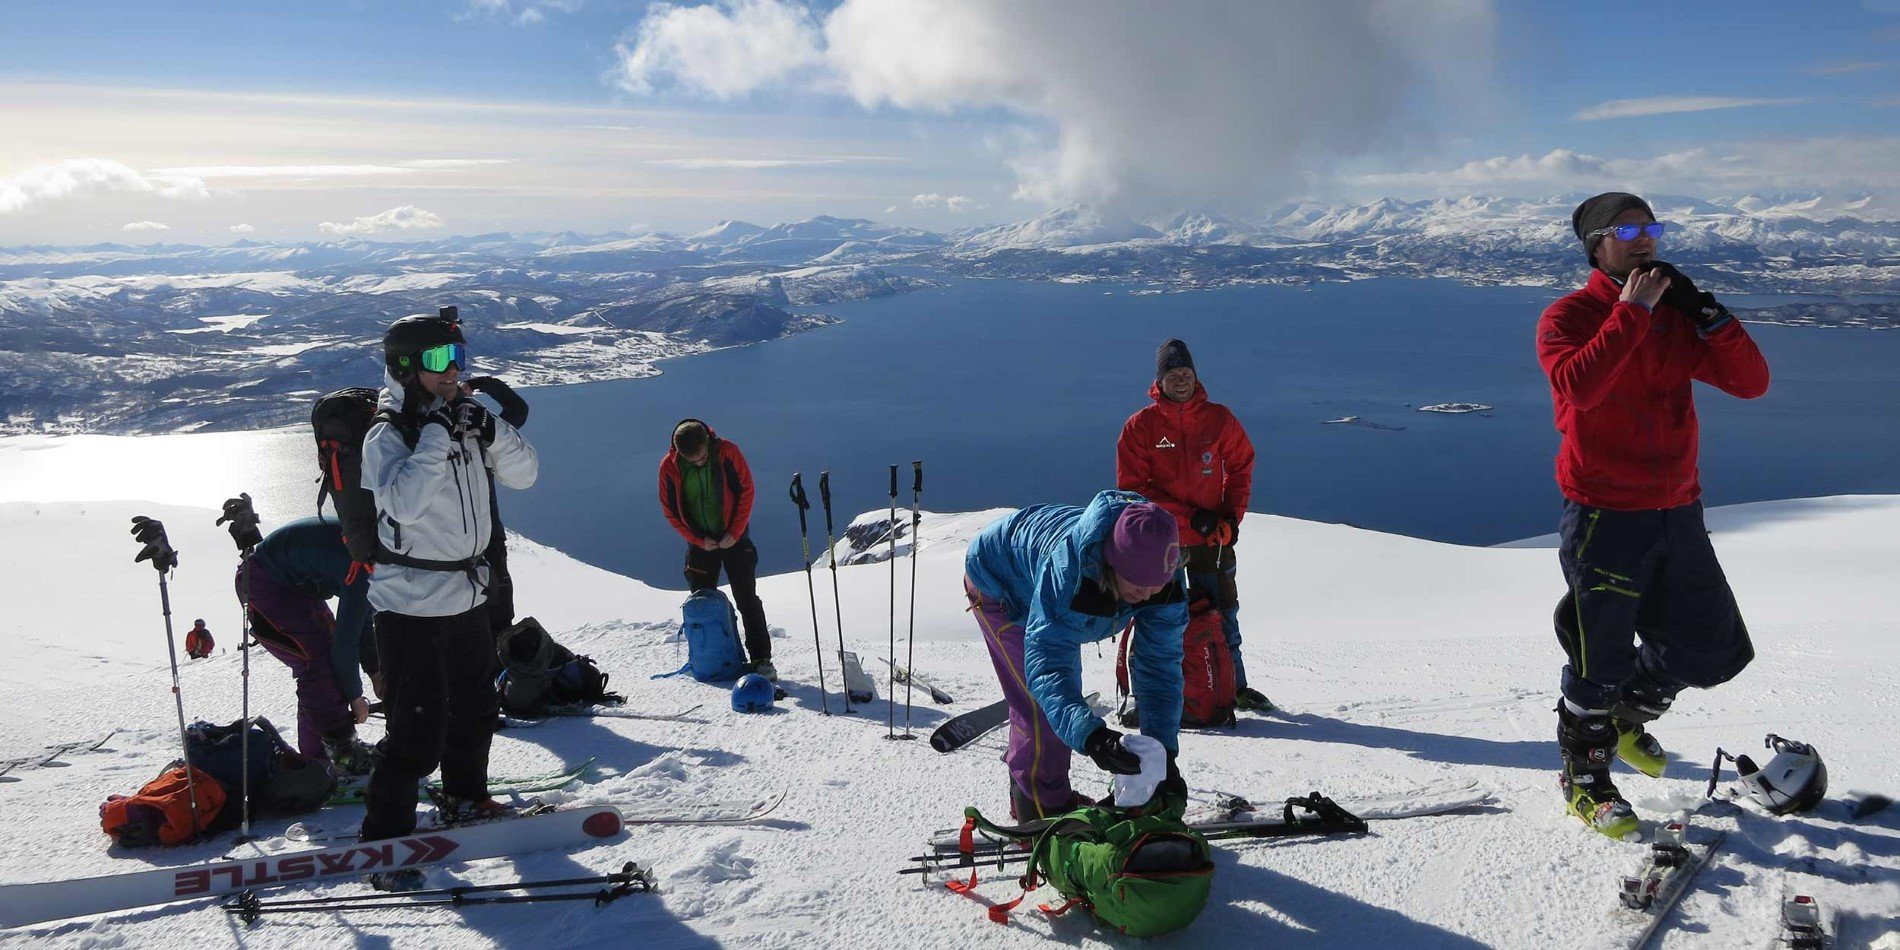 En gruppe mennesker, der Rider ski på toppen af et snedækket bjerg